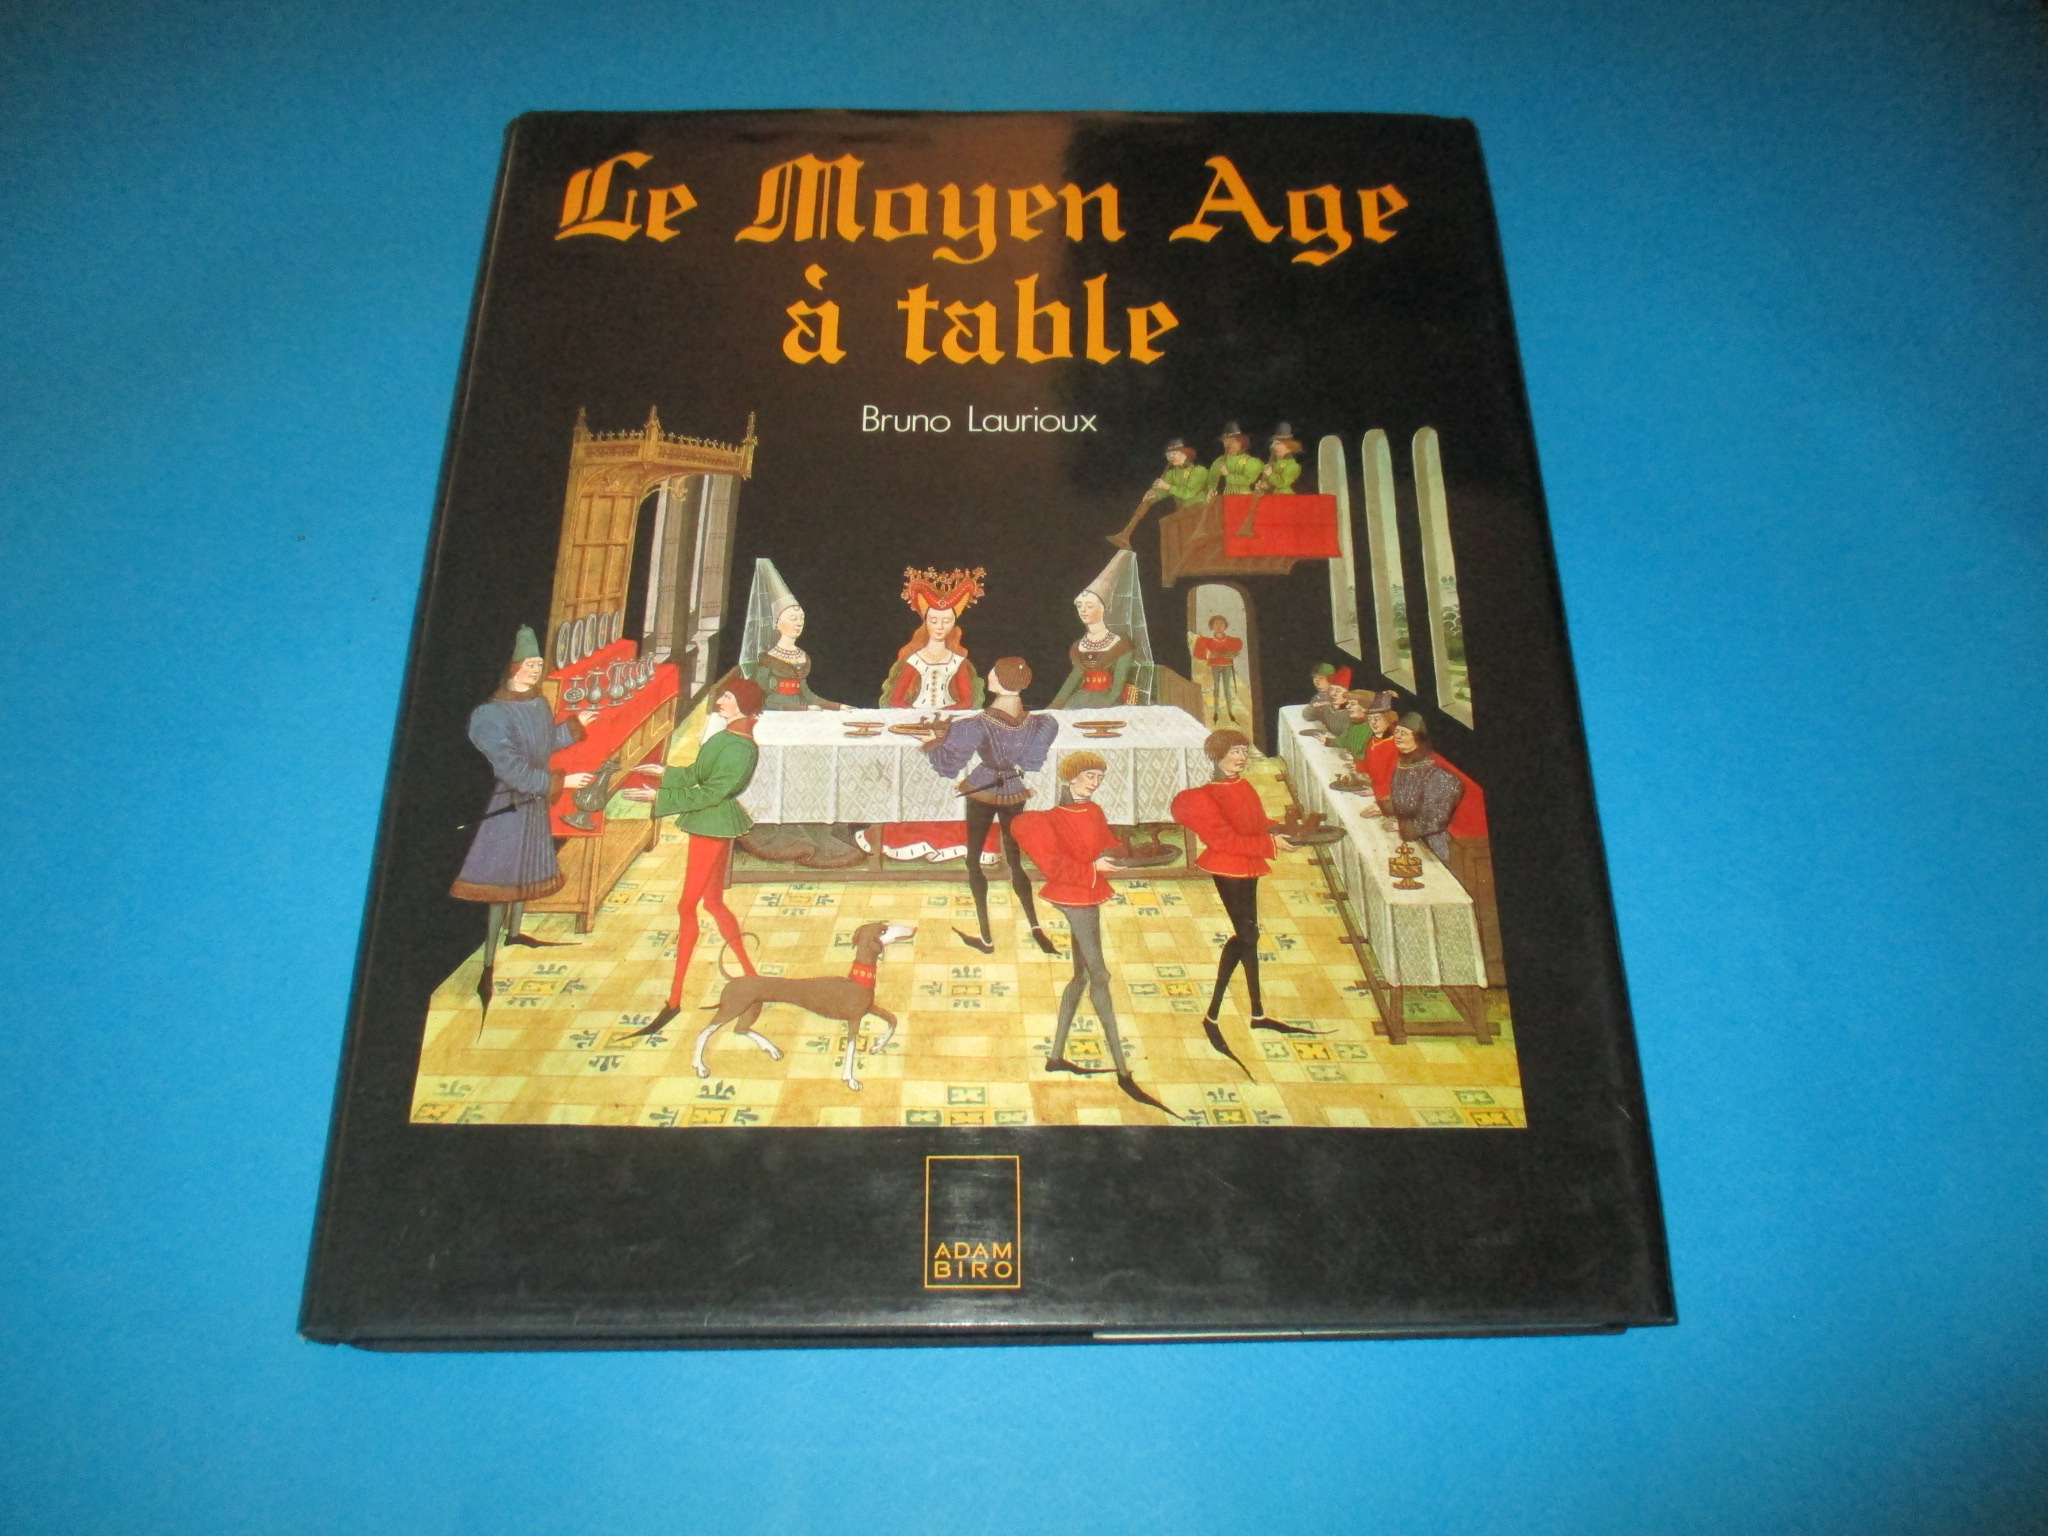 Le Moyen Age à table, Bruno Laurioux, Adam Biro 1989